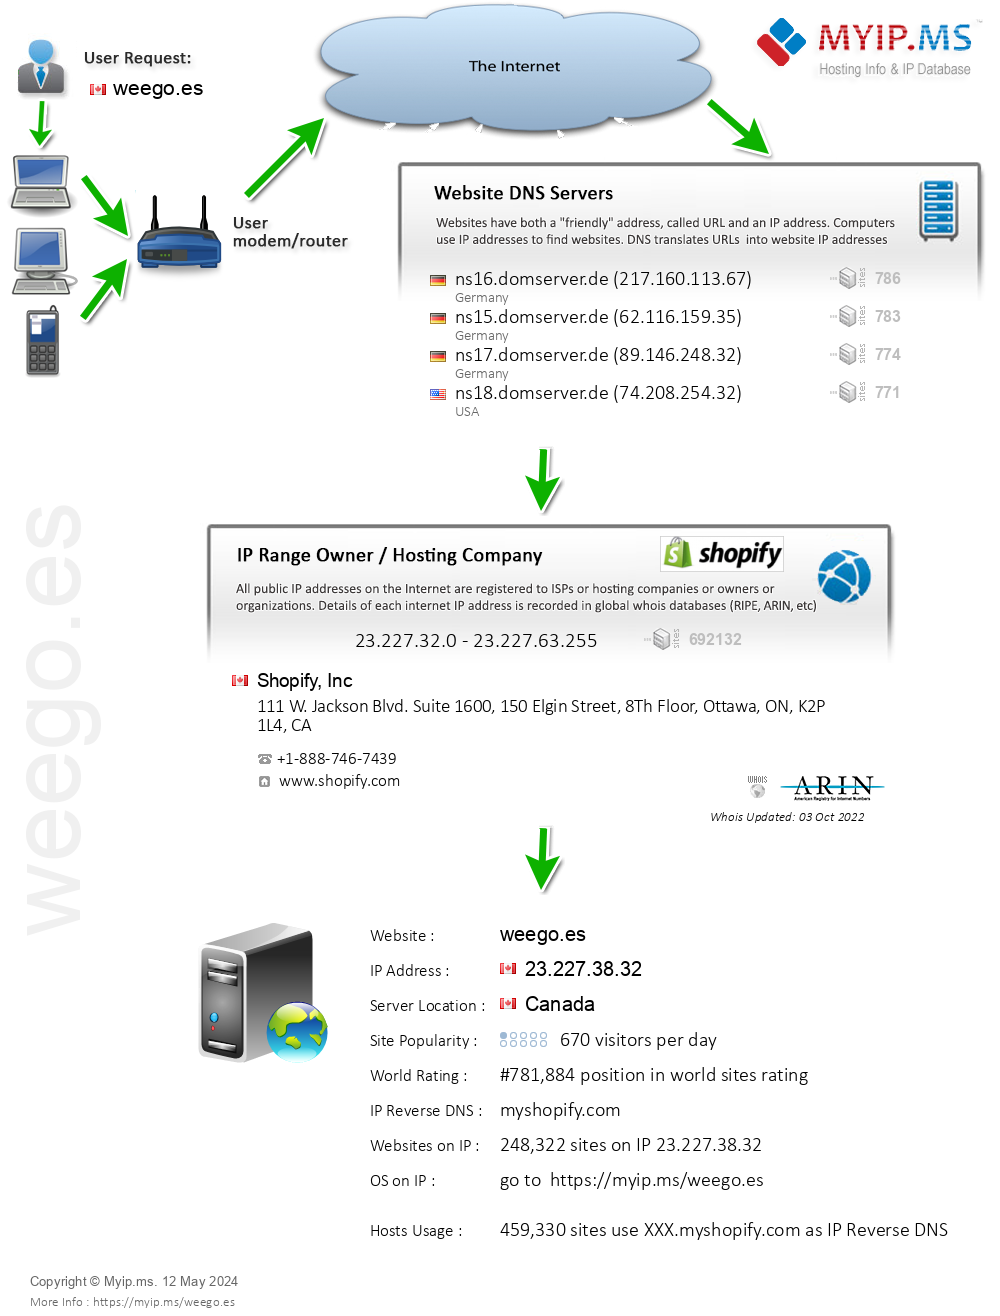 Weego.es - Website Hosting Visual IP Diagram